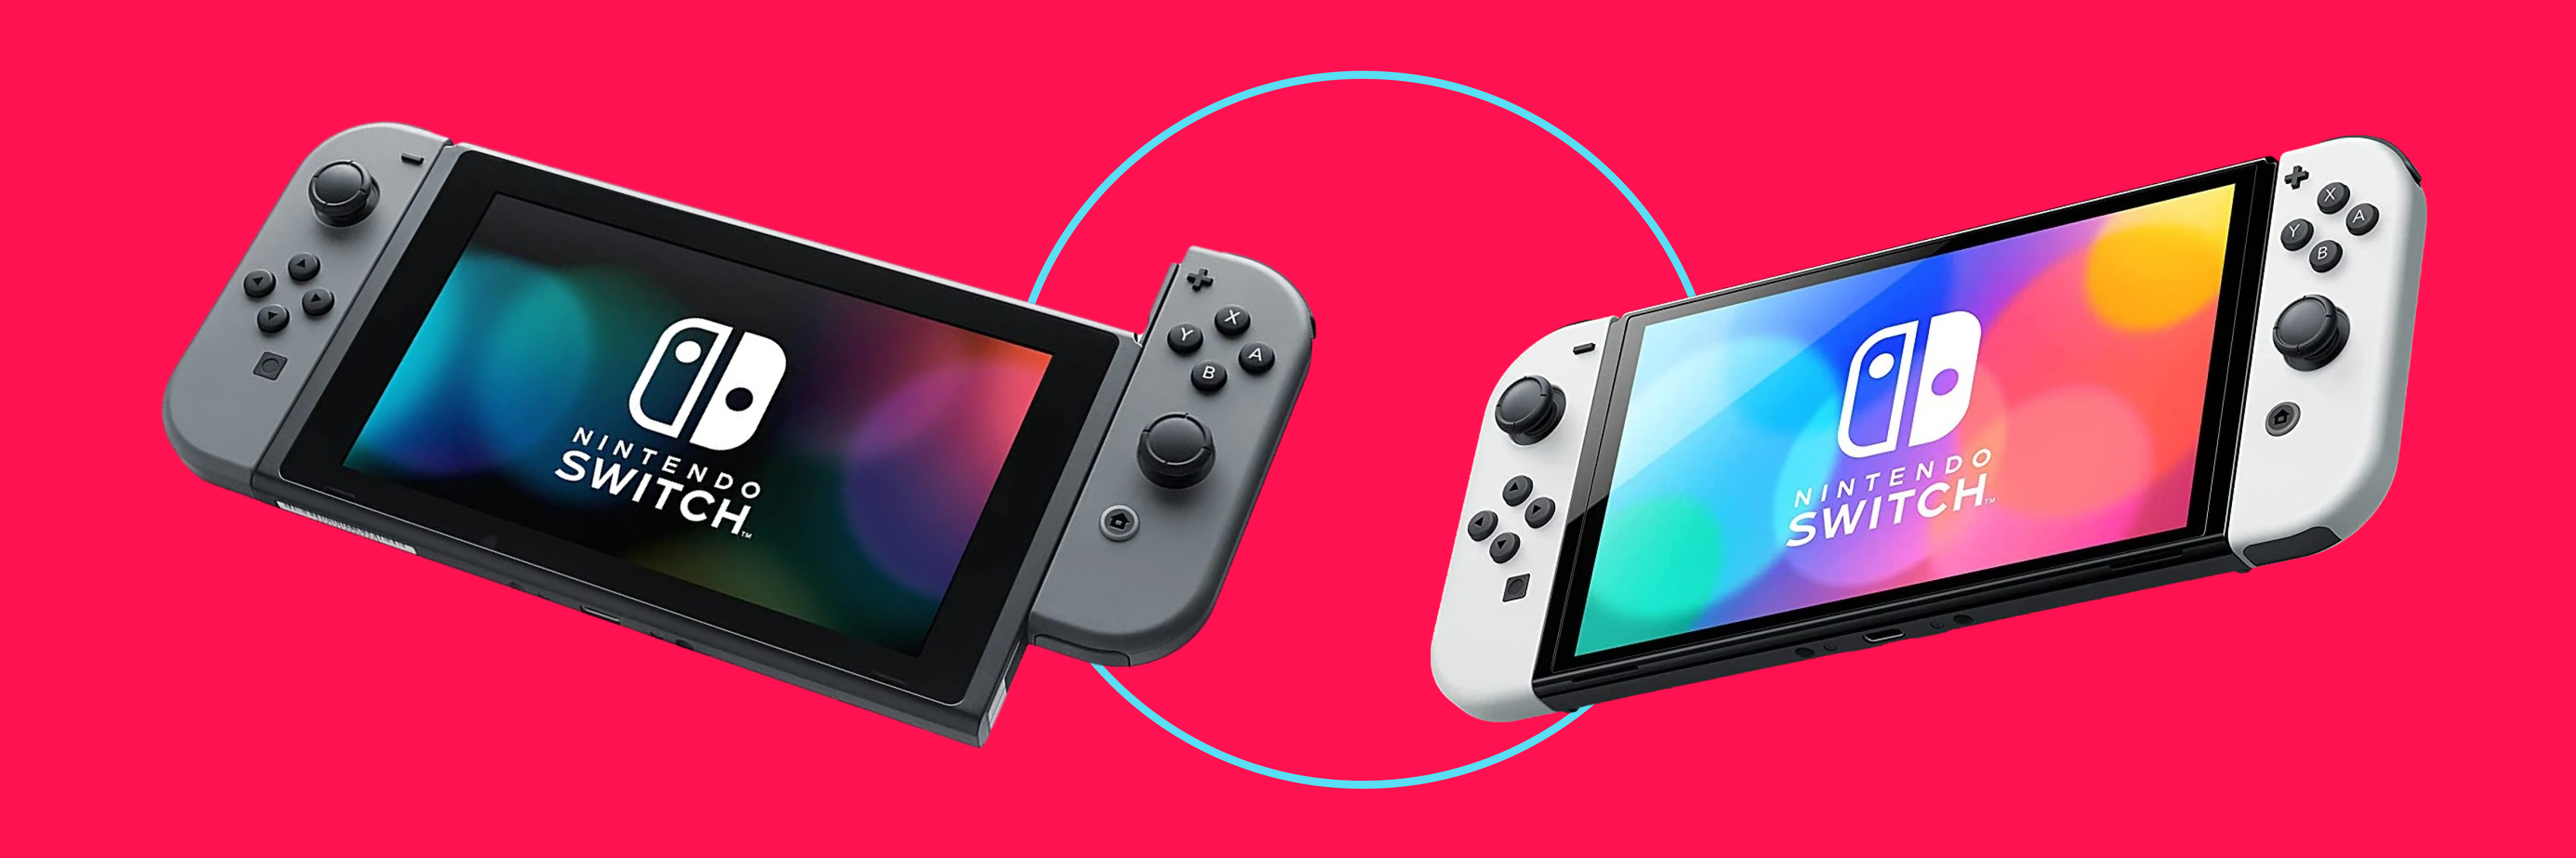 Seria o Nintendo Switch o melhor console retrô da atualidade?